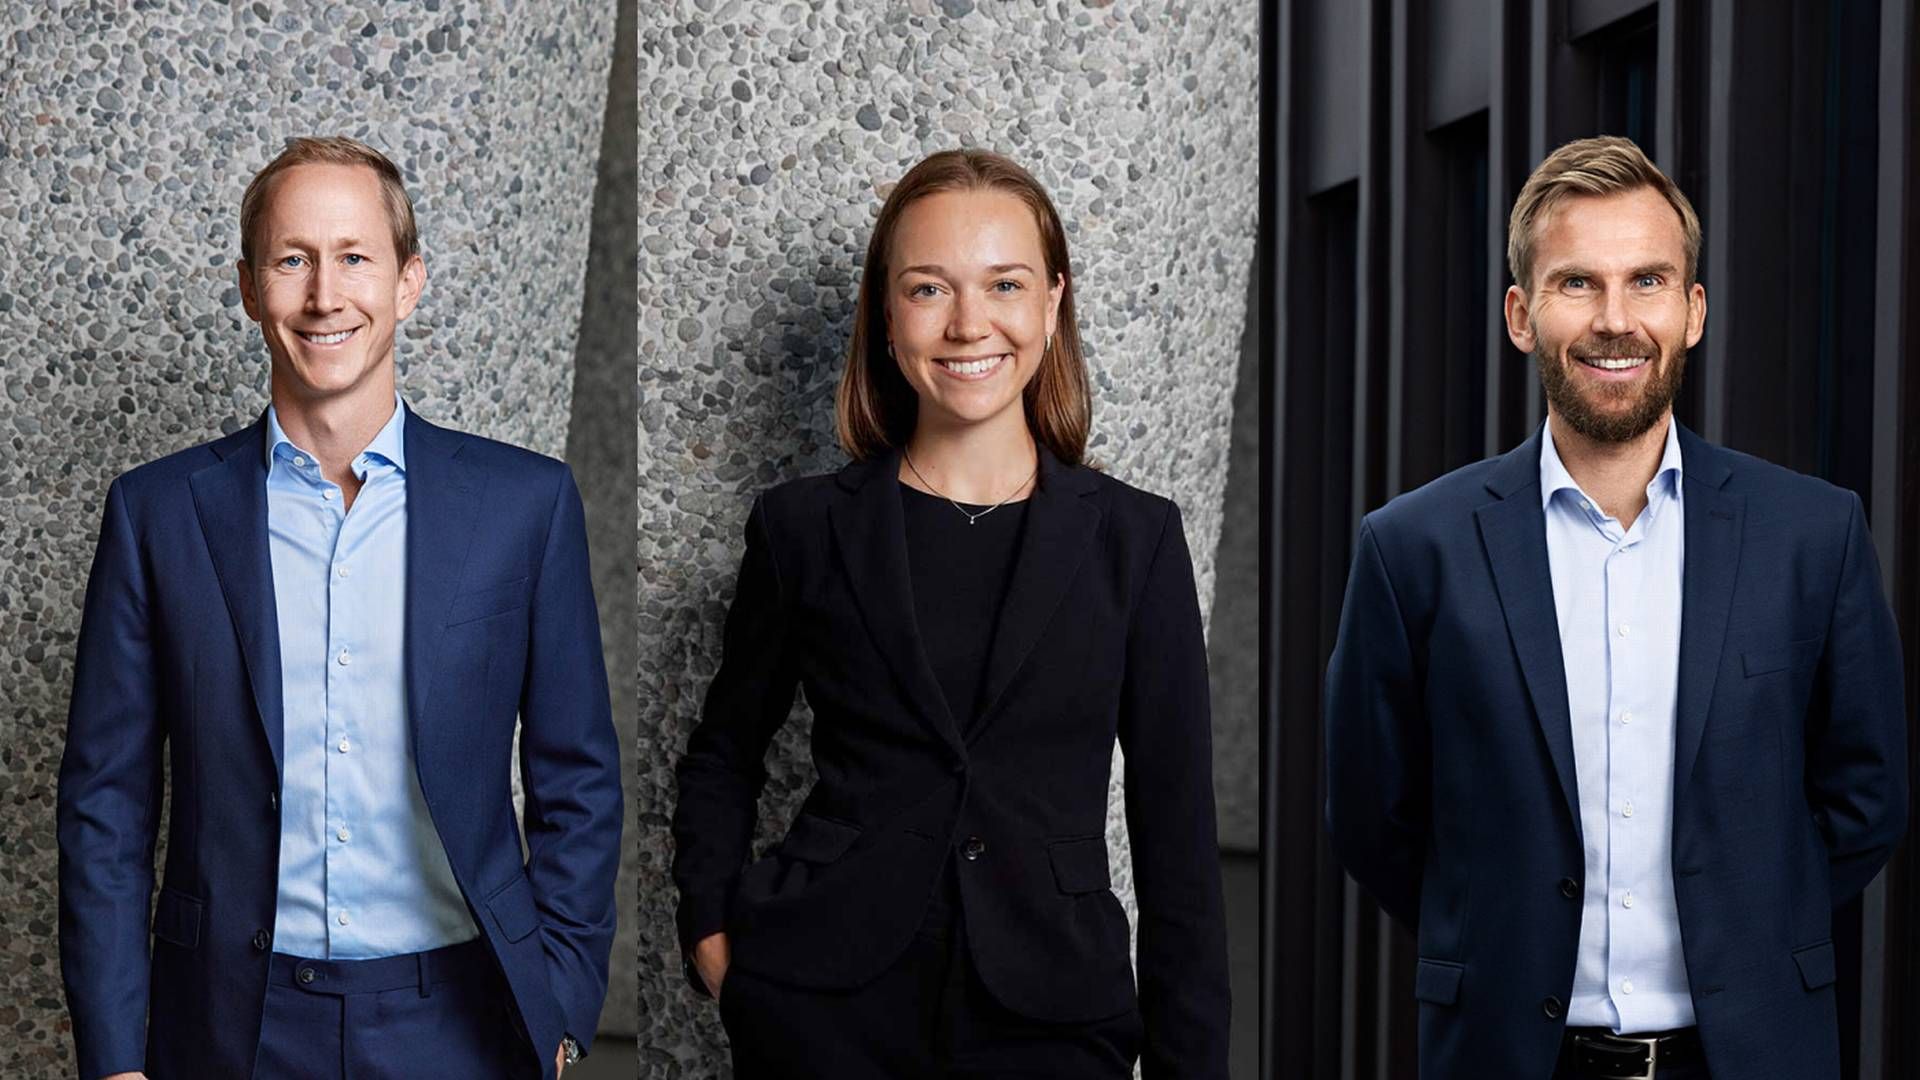 Disse tre jobber alle innen eiendom i Advokatfirmaet Haavind. Fra venstre: Henrik Botten Taubøll (advokat og partner), Caroline Jakhelln (advokatfullmektig) og Kittil Bergan (Specialist Counsel). | Foto: Advokatfirmaet Haavind